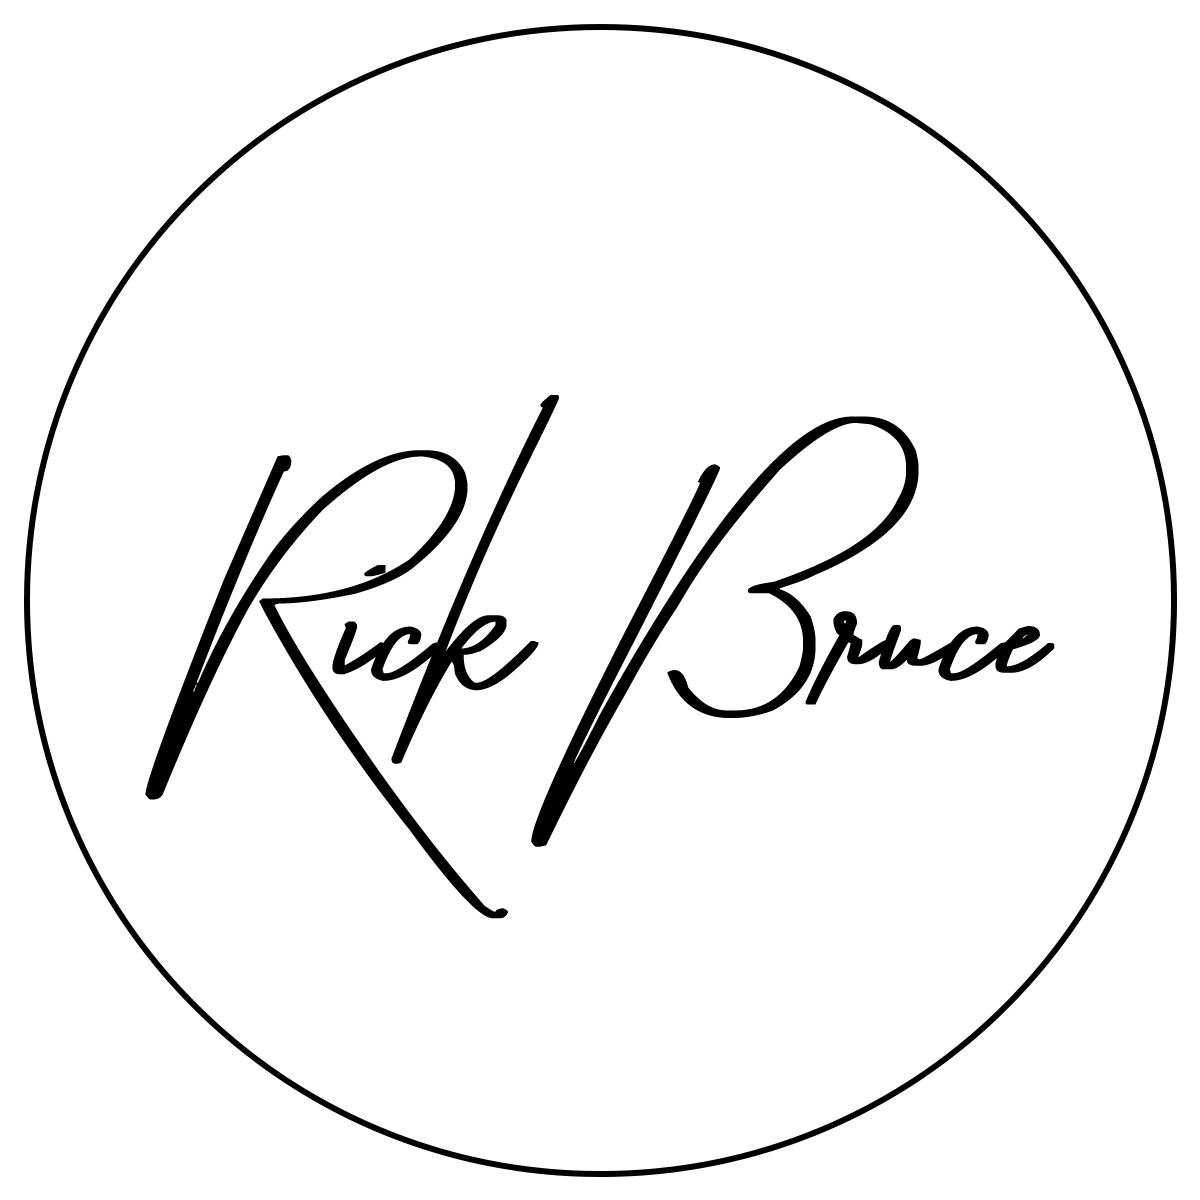 RickTheBruce logo